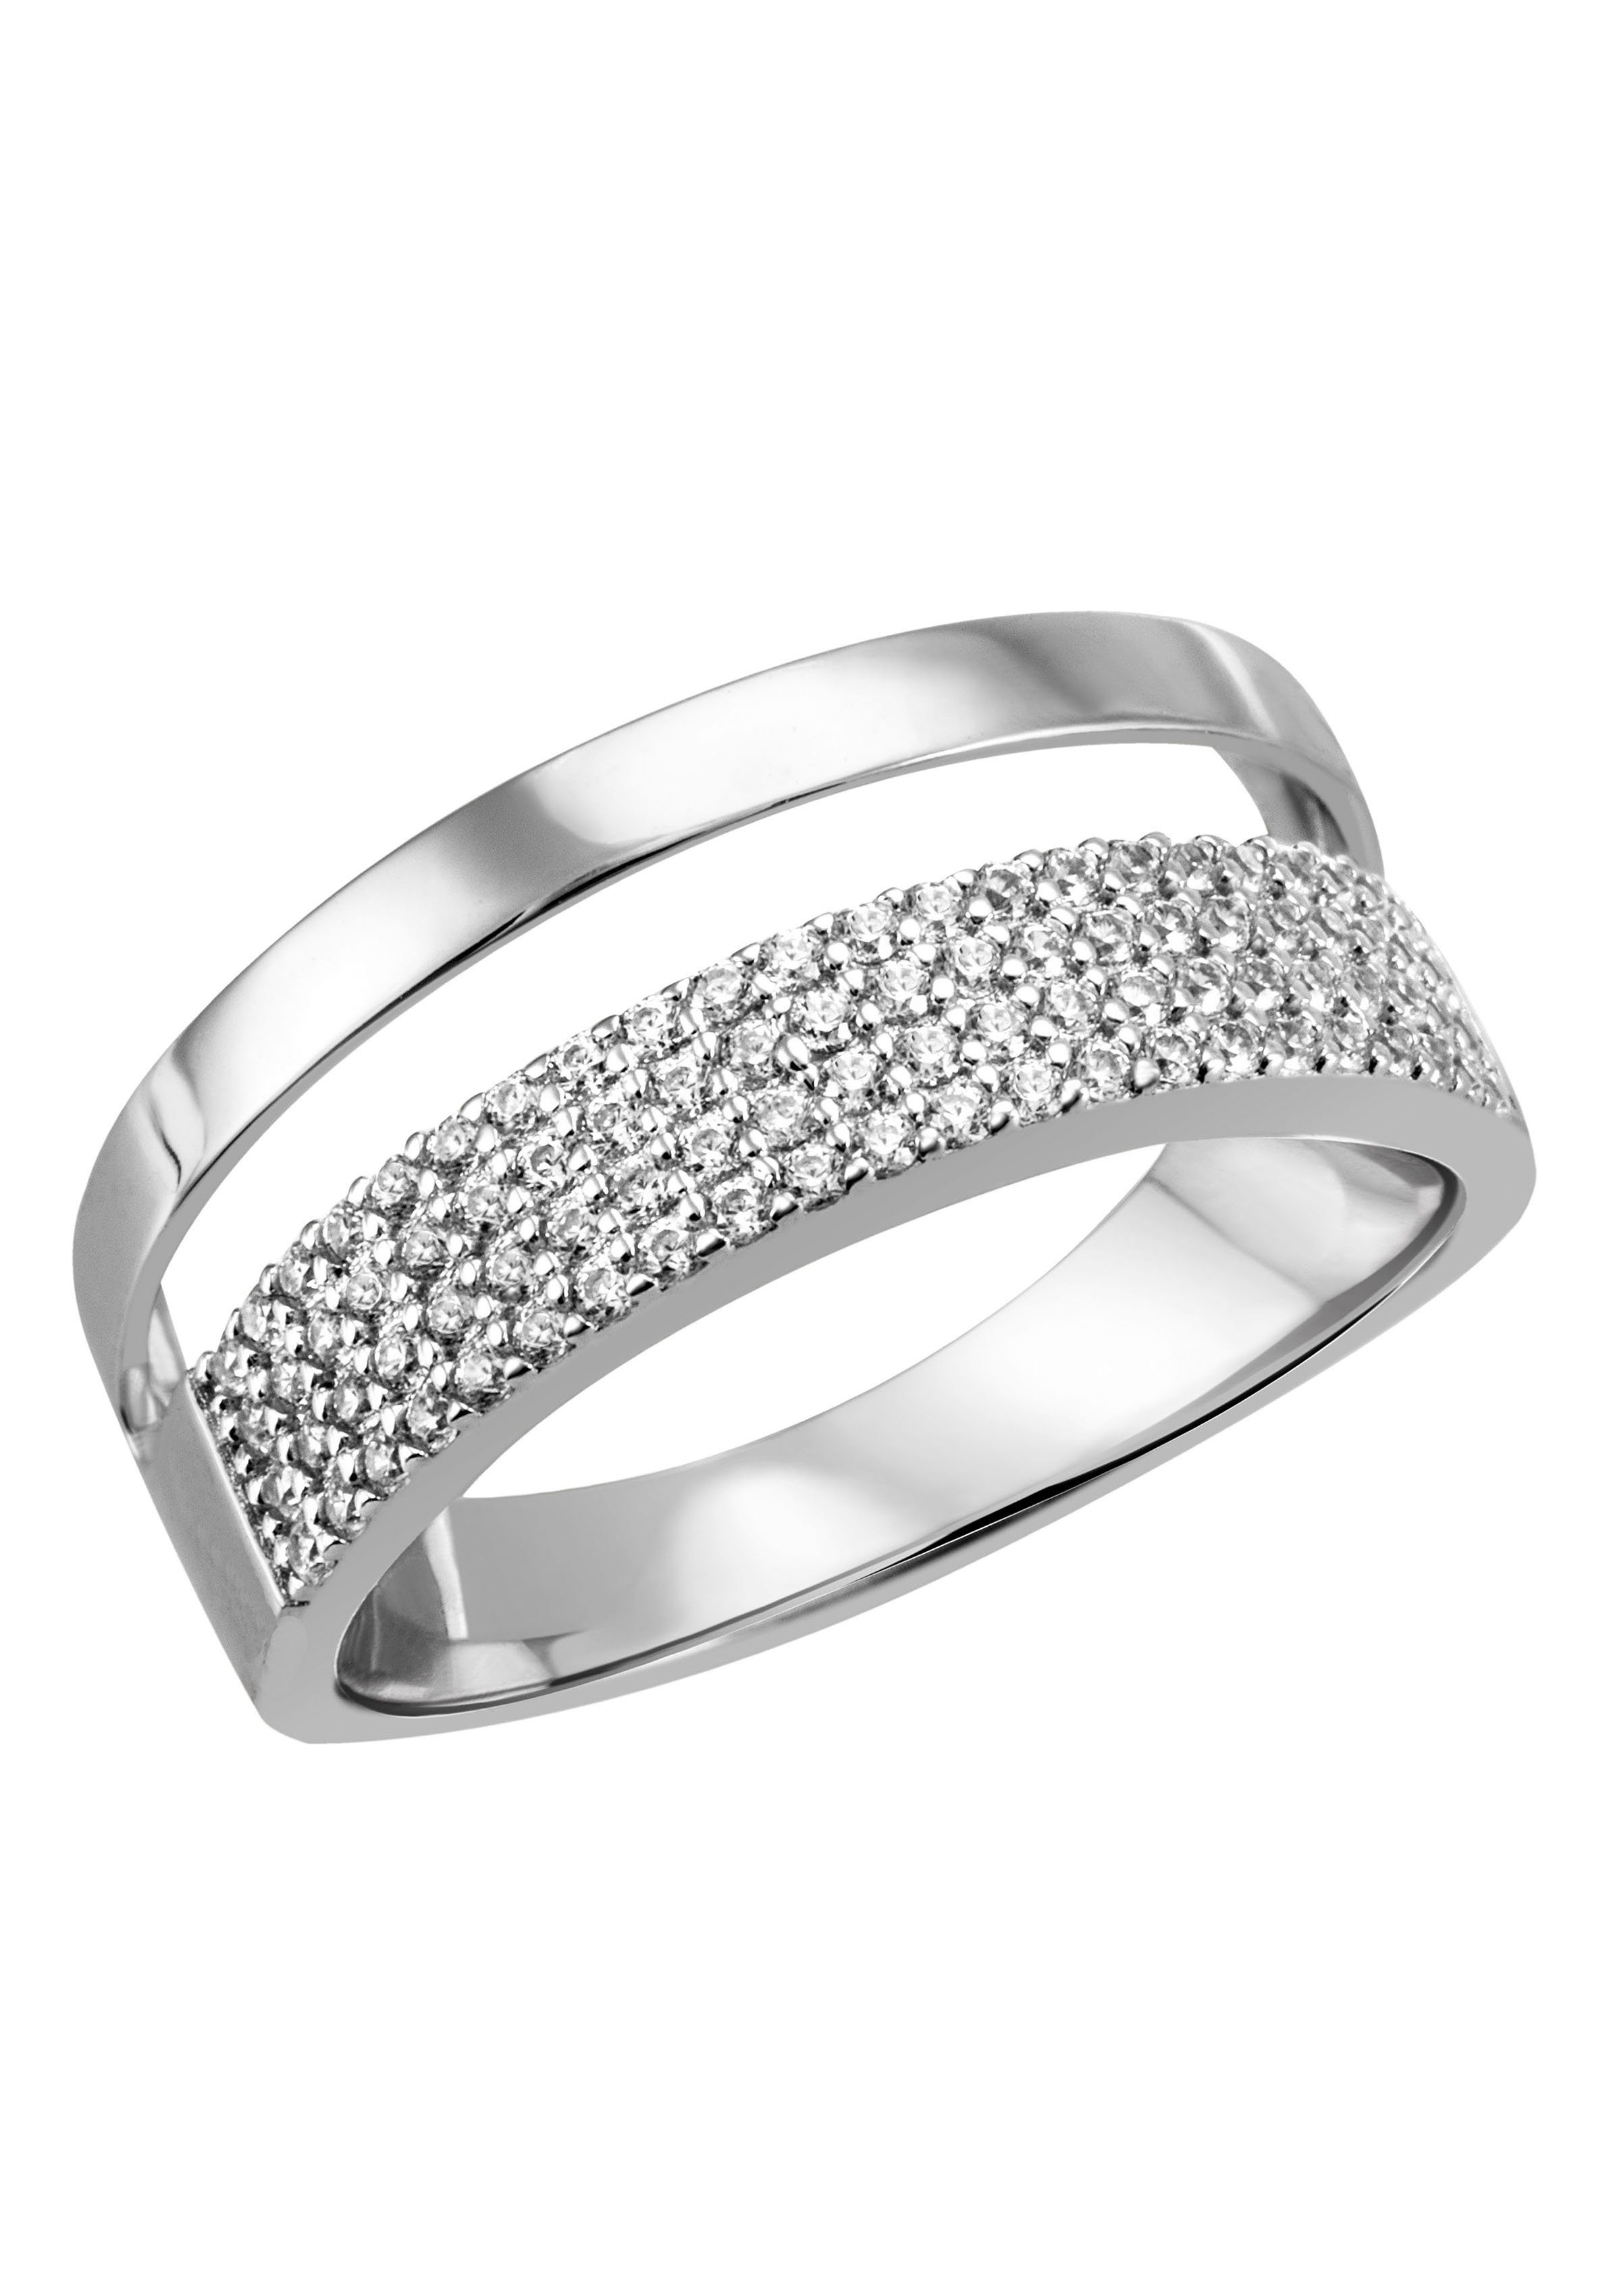 Firetti Fingerring Schmuck Geschenk Silber 925 Silberring Ring Pavé-Optik glitzernd, zu Kleid, Shirt, Jeans, Sneaker! Anlass Geburtstag Weihnachten